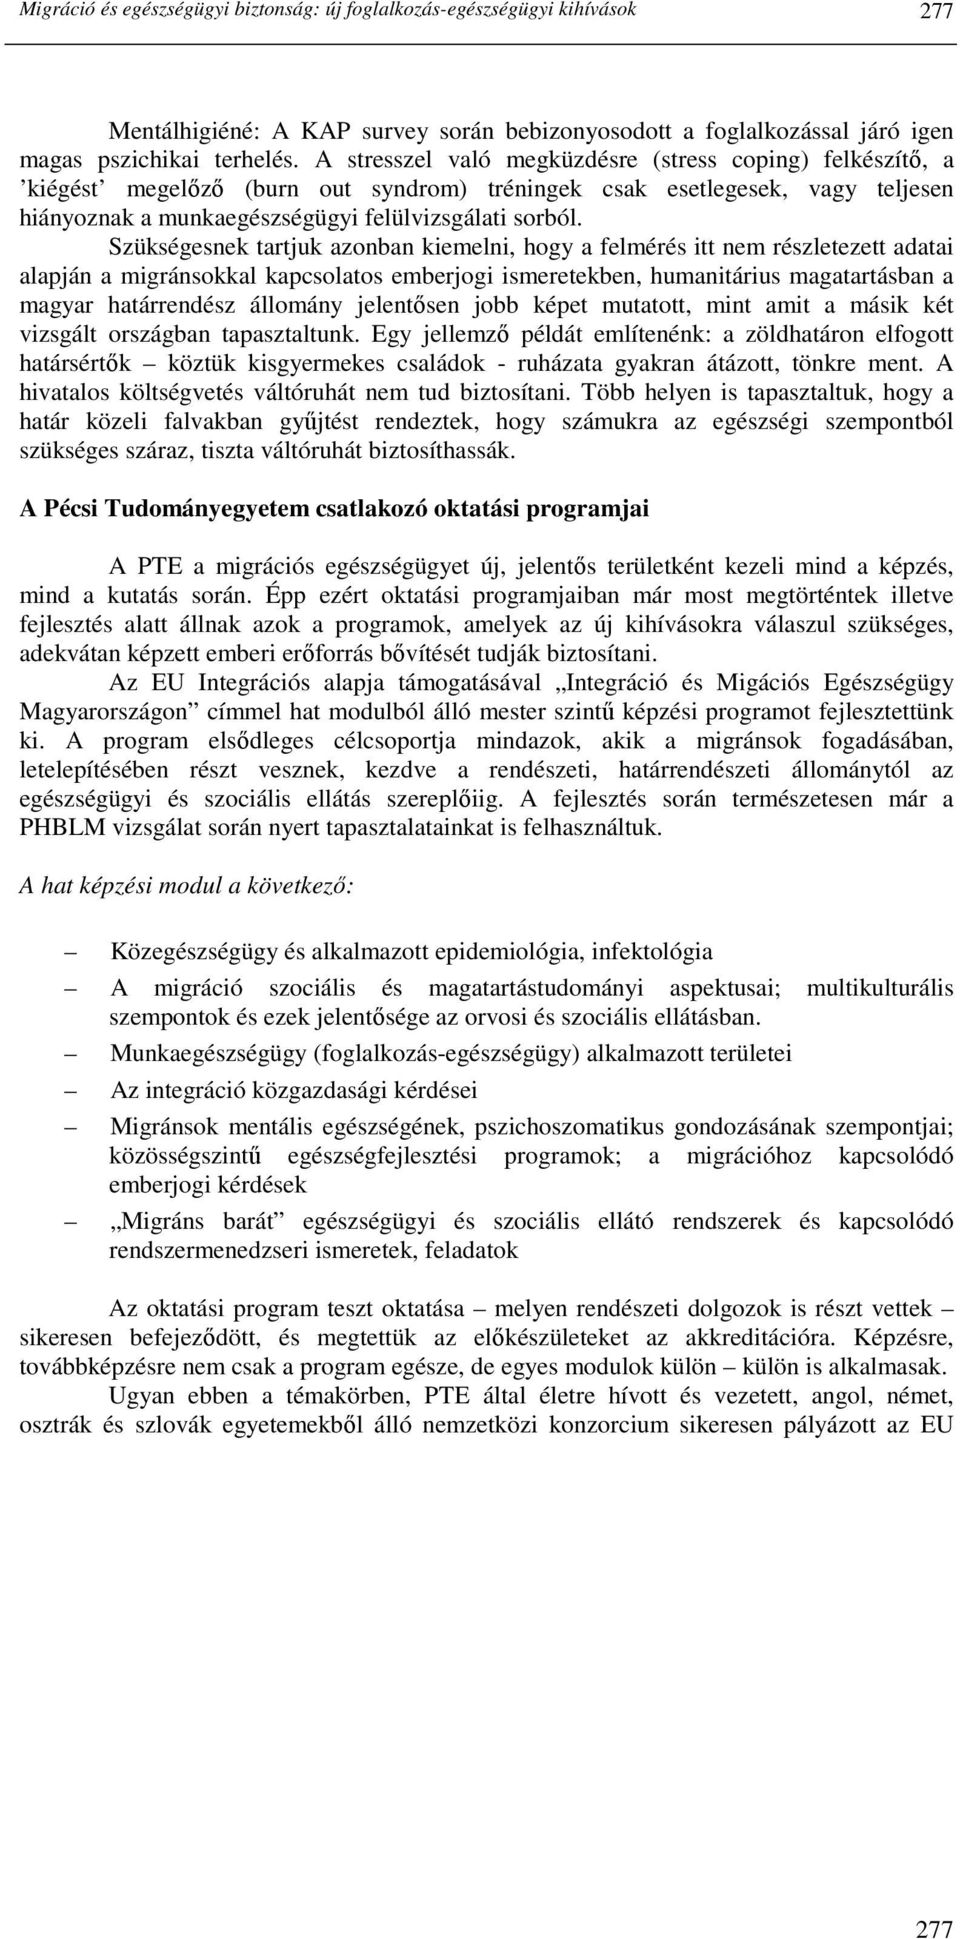 Szükségesnek tartjuk azonban kiemelni, hogy a felmérés itt nem részletezett adatai alapján a migránsokkal kapcsolatos emberjogi ismeretekben, humanitárius magatartásban a magyar határrendész állomány